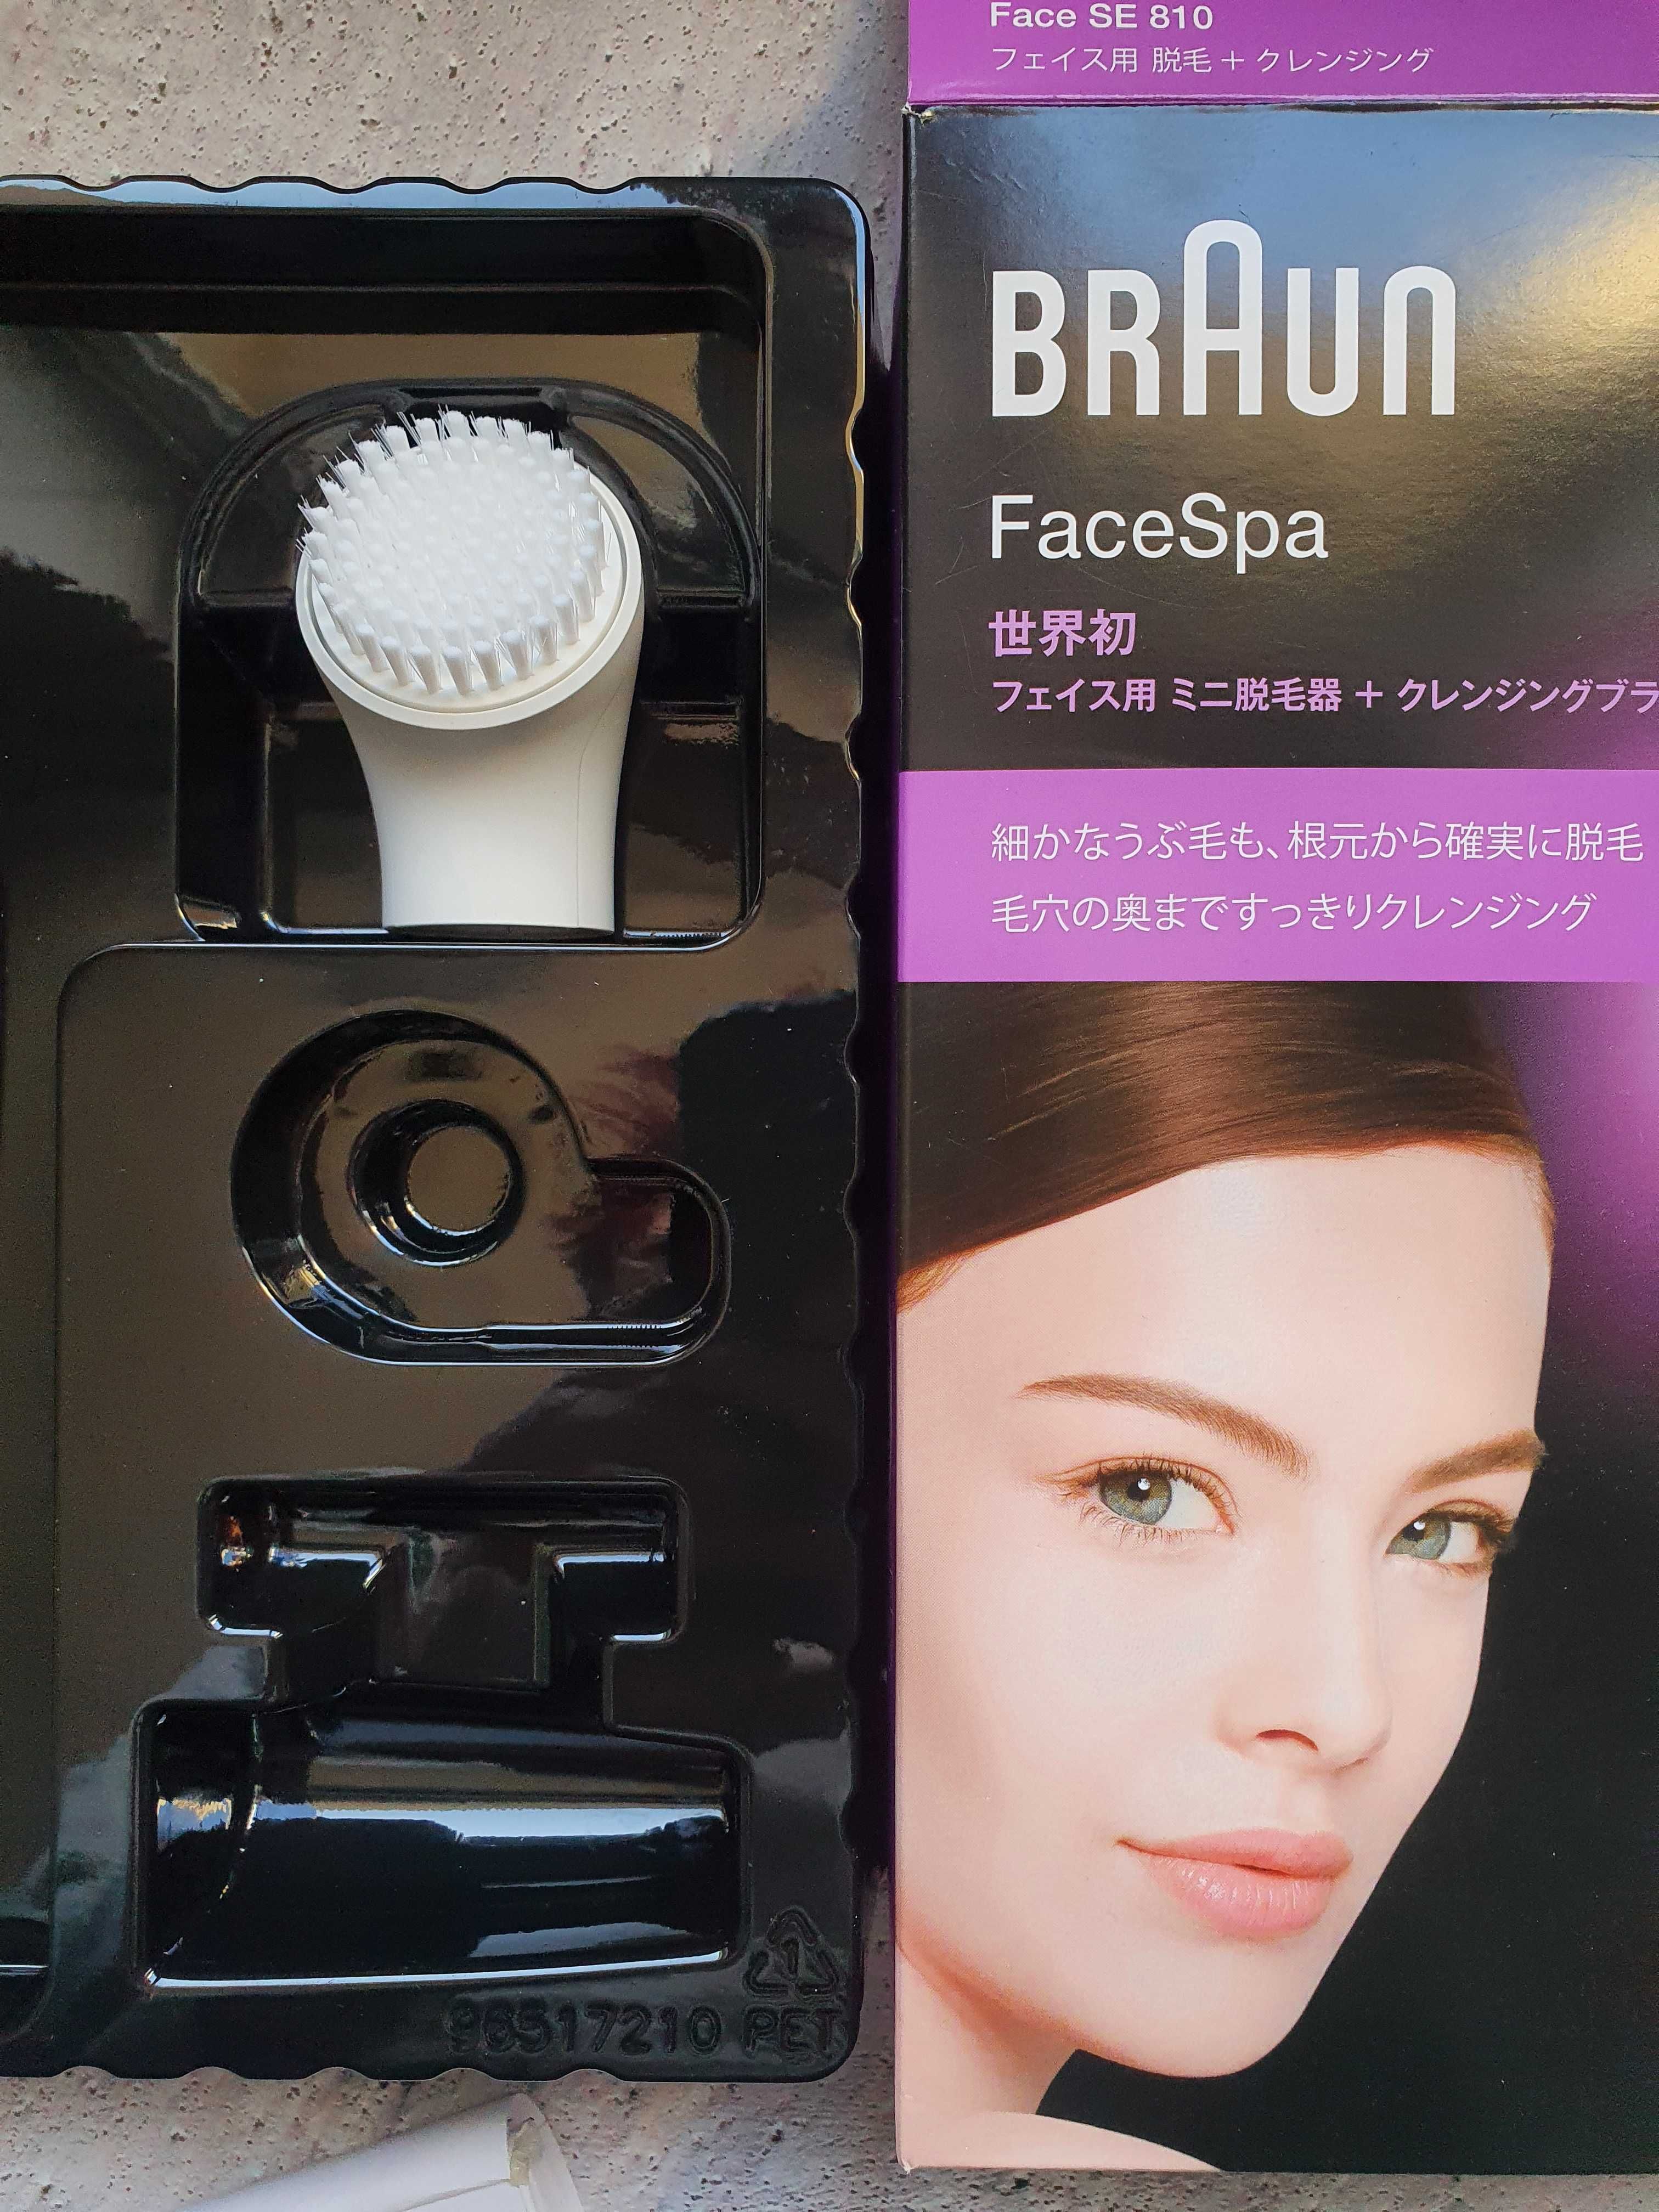 Głowica Szczoteczka do twarzy Braun z zestawu Face SE 810